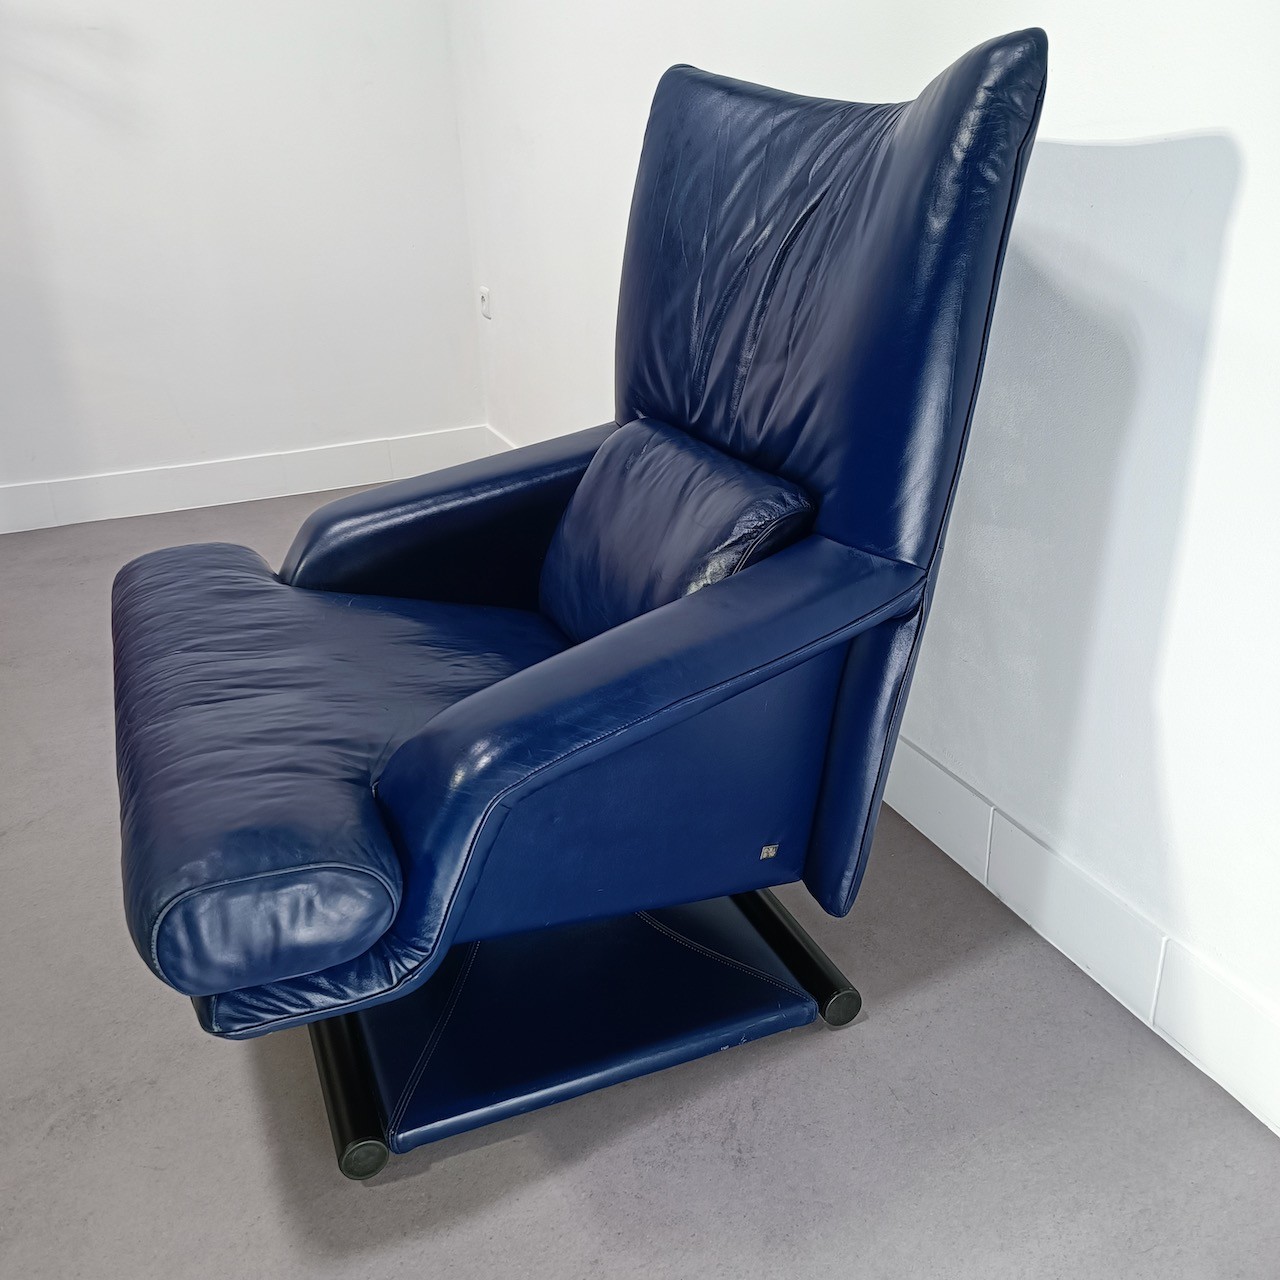 Bijdrage gijzelaar Reserve Rolf Benz 6500 relax fauteuil | www.ClaudiaCollections.com